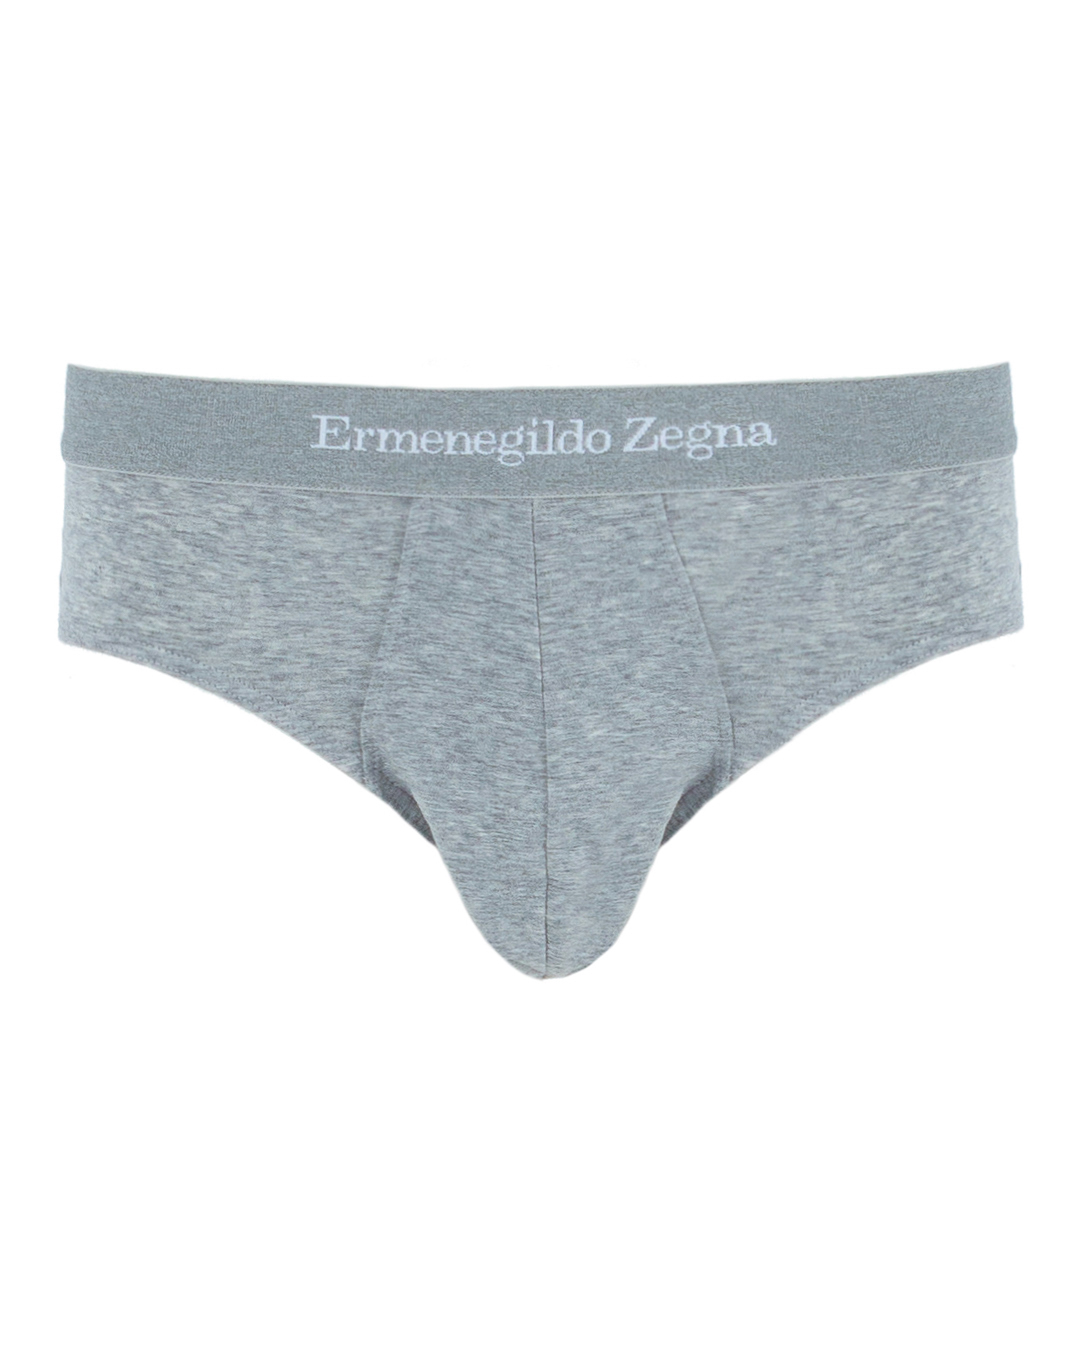 Ermenegildo Zegna с логотипом бренда  артикул  марки Ermenegildo Zegna купить за 4900 руб.